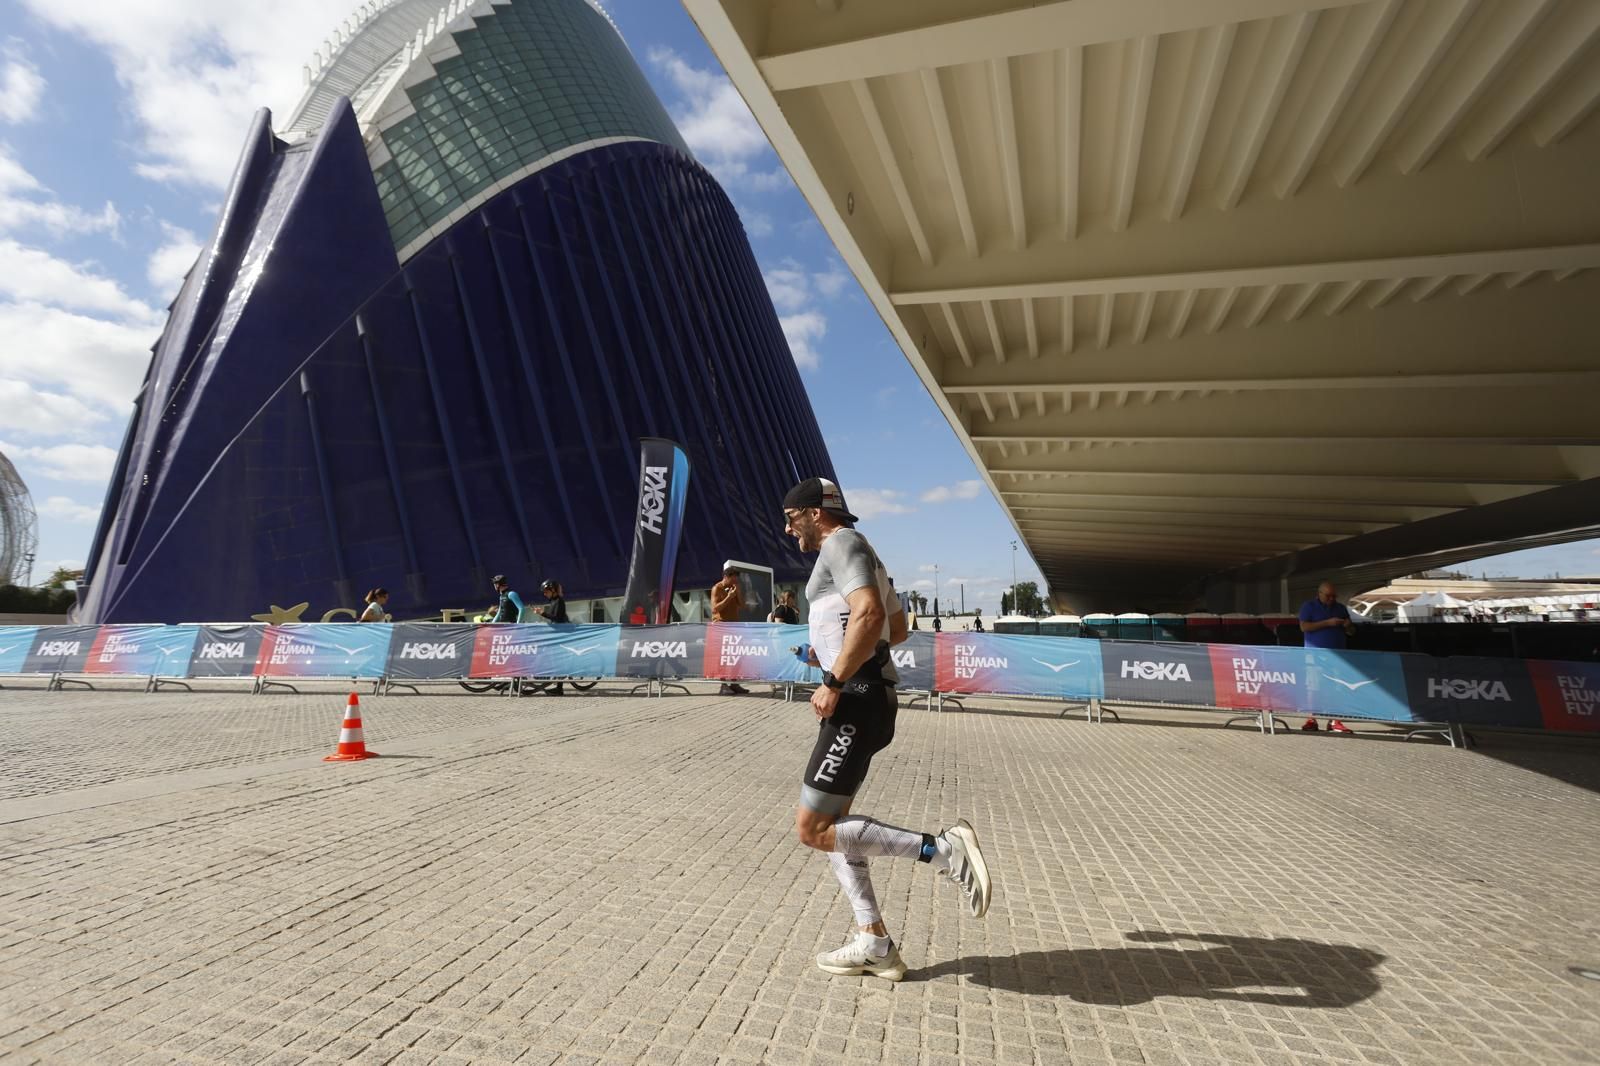 Las mejores imágenes del Ironman de València